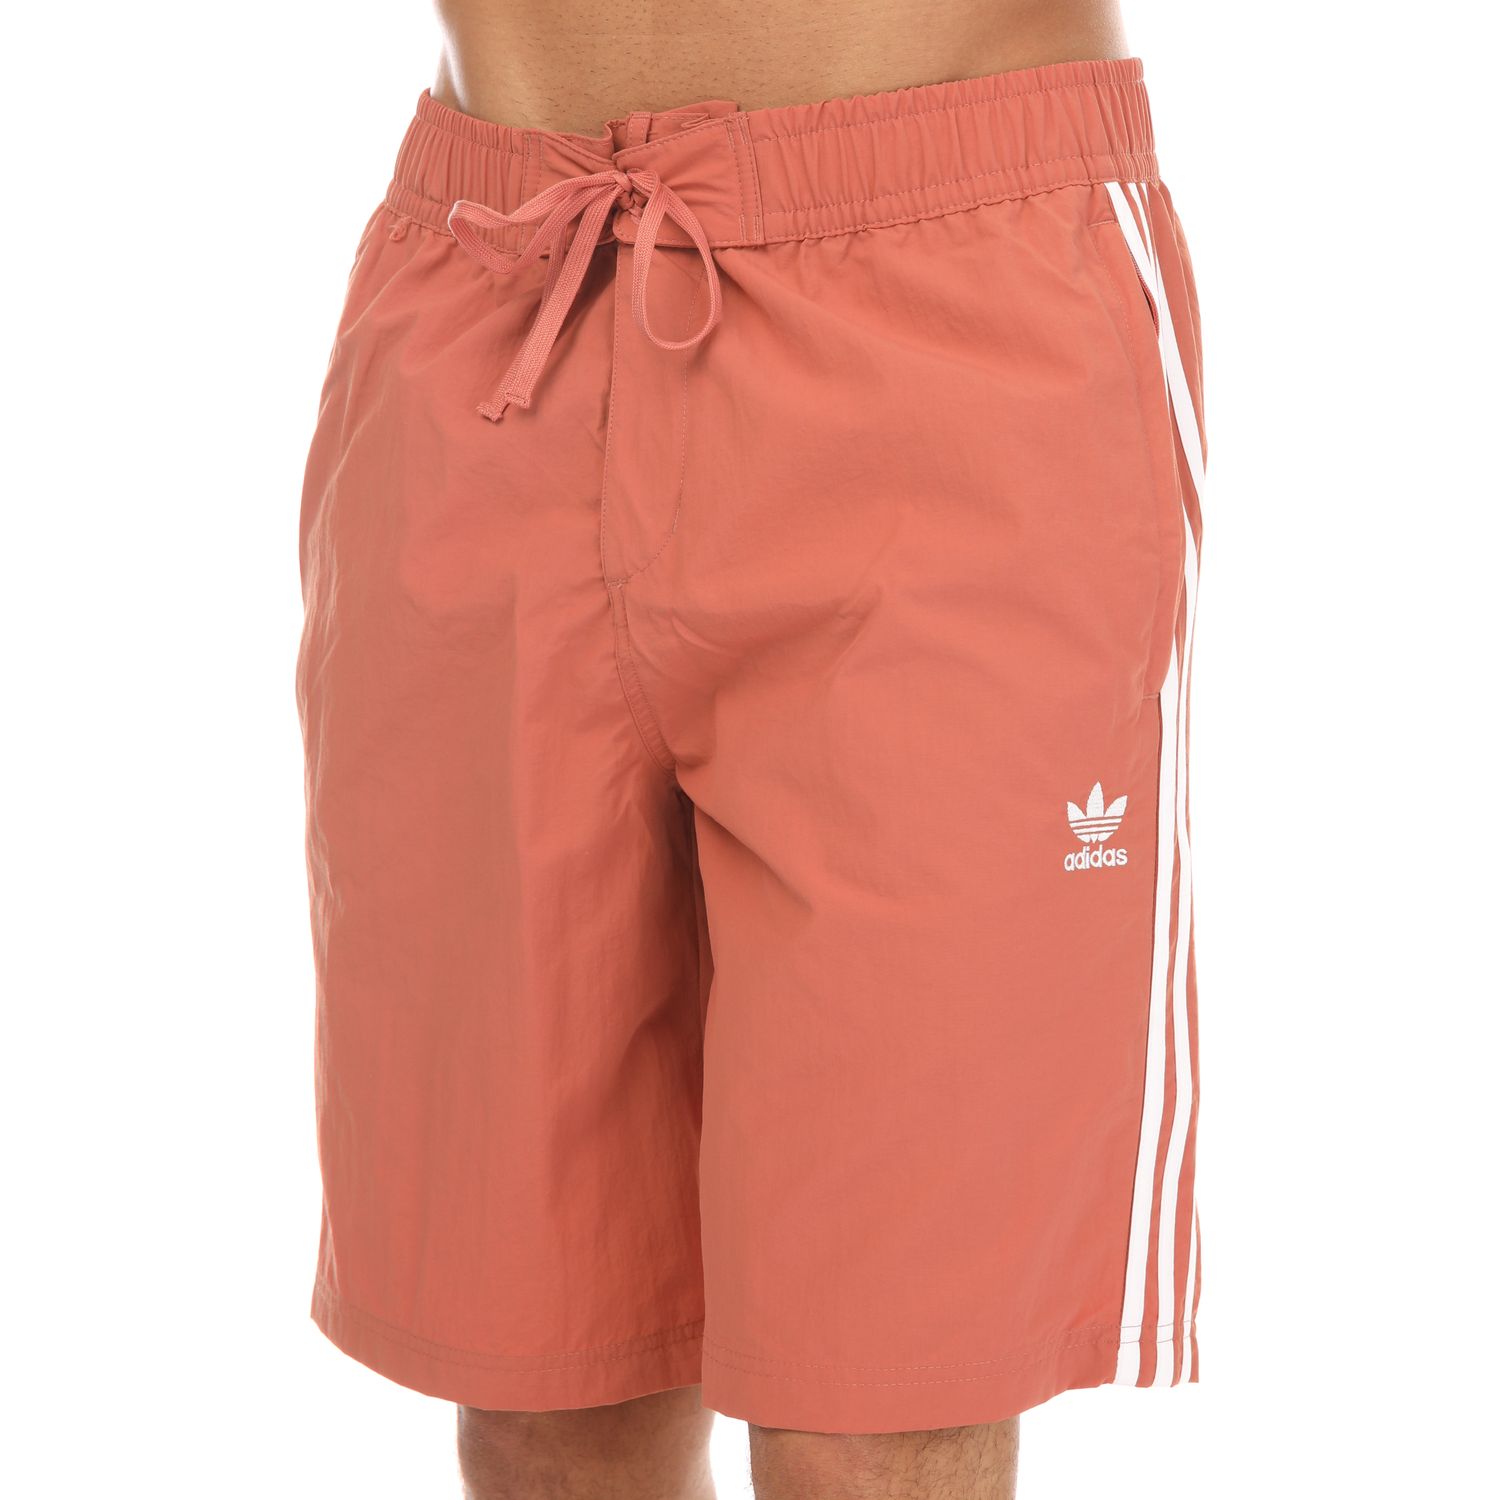 Op het randje Hassy naar voren gebracht Brown adidas Originals Mens Adicolor 3-Stripes Board Shorts - Get The Label